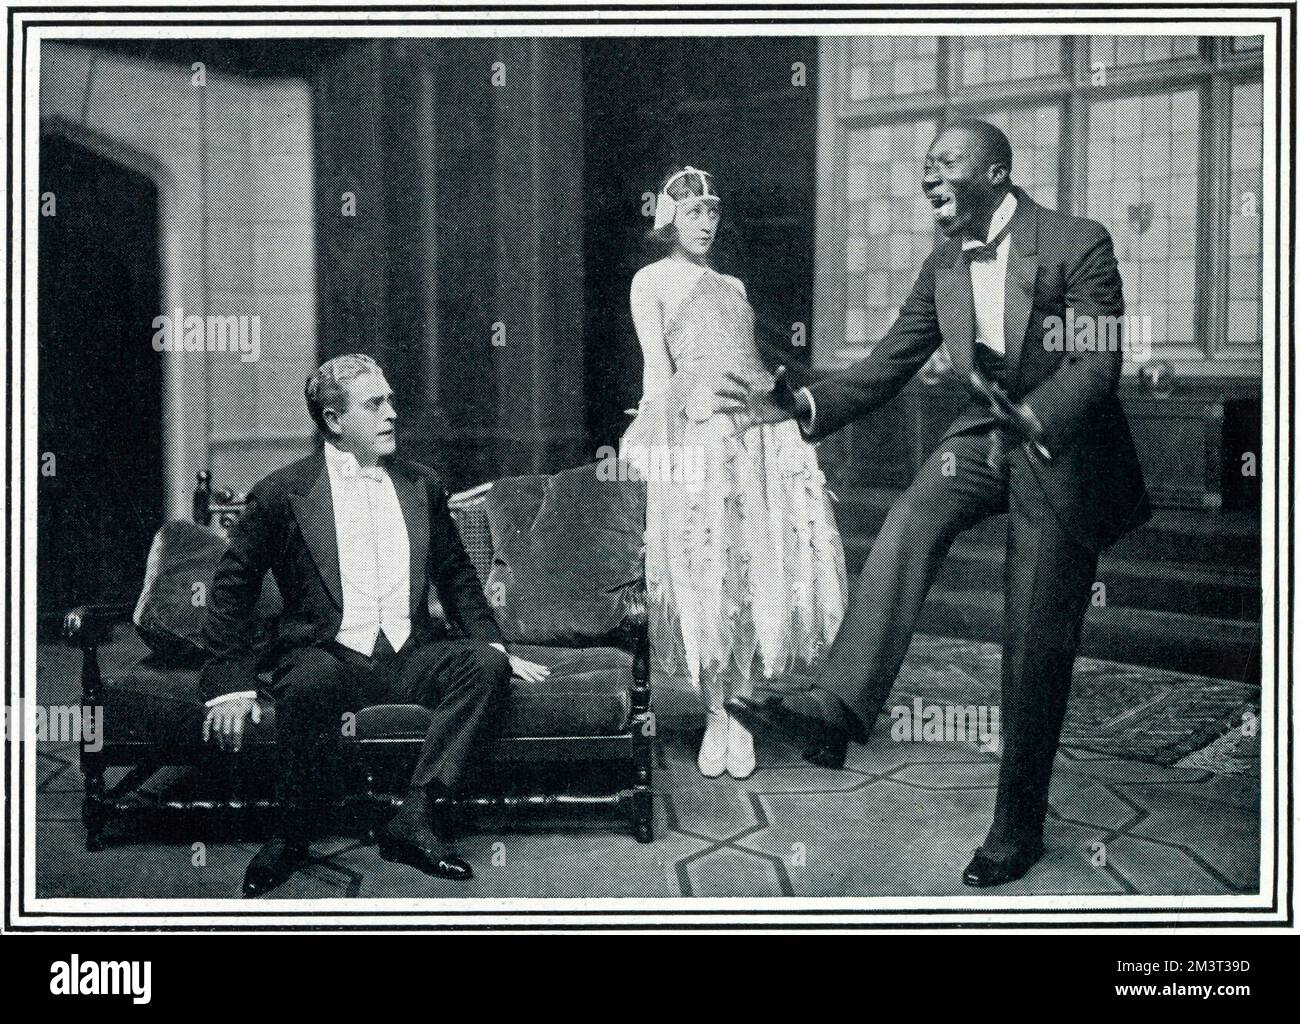 "Les balanciers" au critère - une nouvelle farce de "la pêche" par Ben travers - Acte II - M. Ernest Trimmingham (mal orthographié ici Trimingham) (1880-1942) est le leader du groupe jouant pour les balanciers. Il montre à M. Cyril Maude comment « rester avec moi » peut être jazzé. Trimmingham était un acteur sur scène et à l'écran du territoire britannique d'outre-mer des Bermudes. Il a été l'un des premiers acteurs noirs du cinéma britannique. Banque D'Images